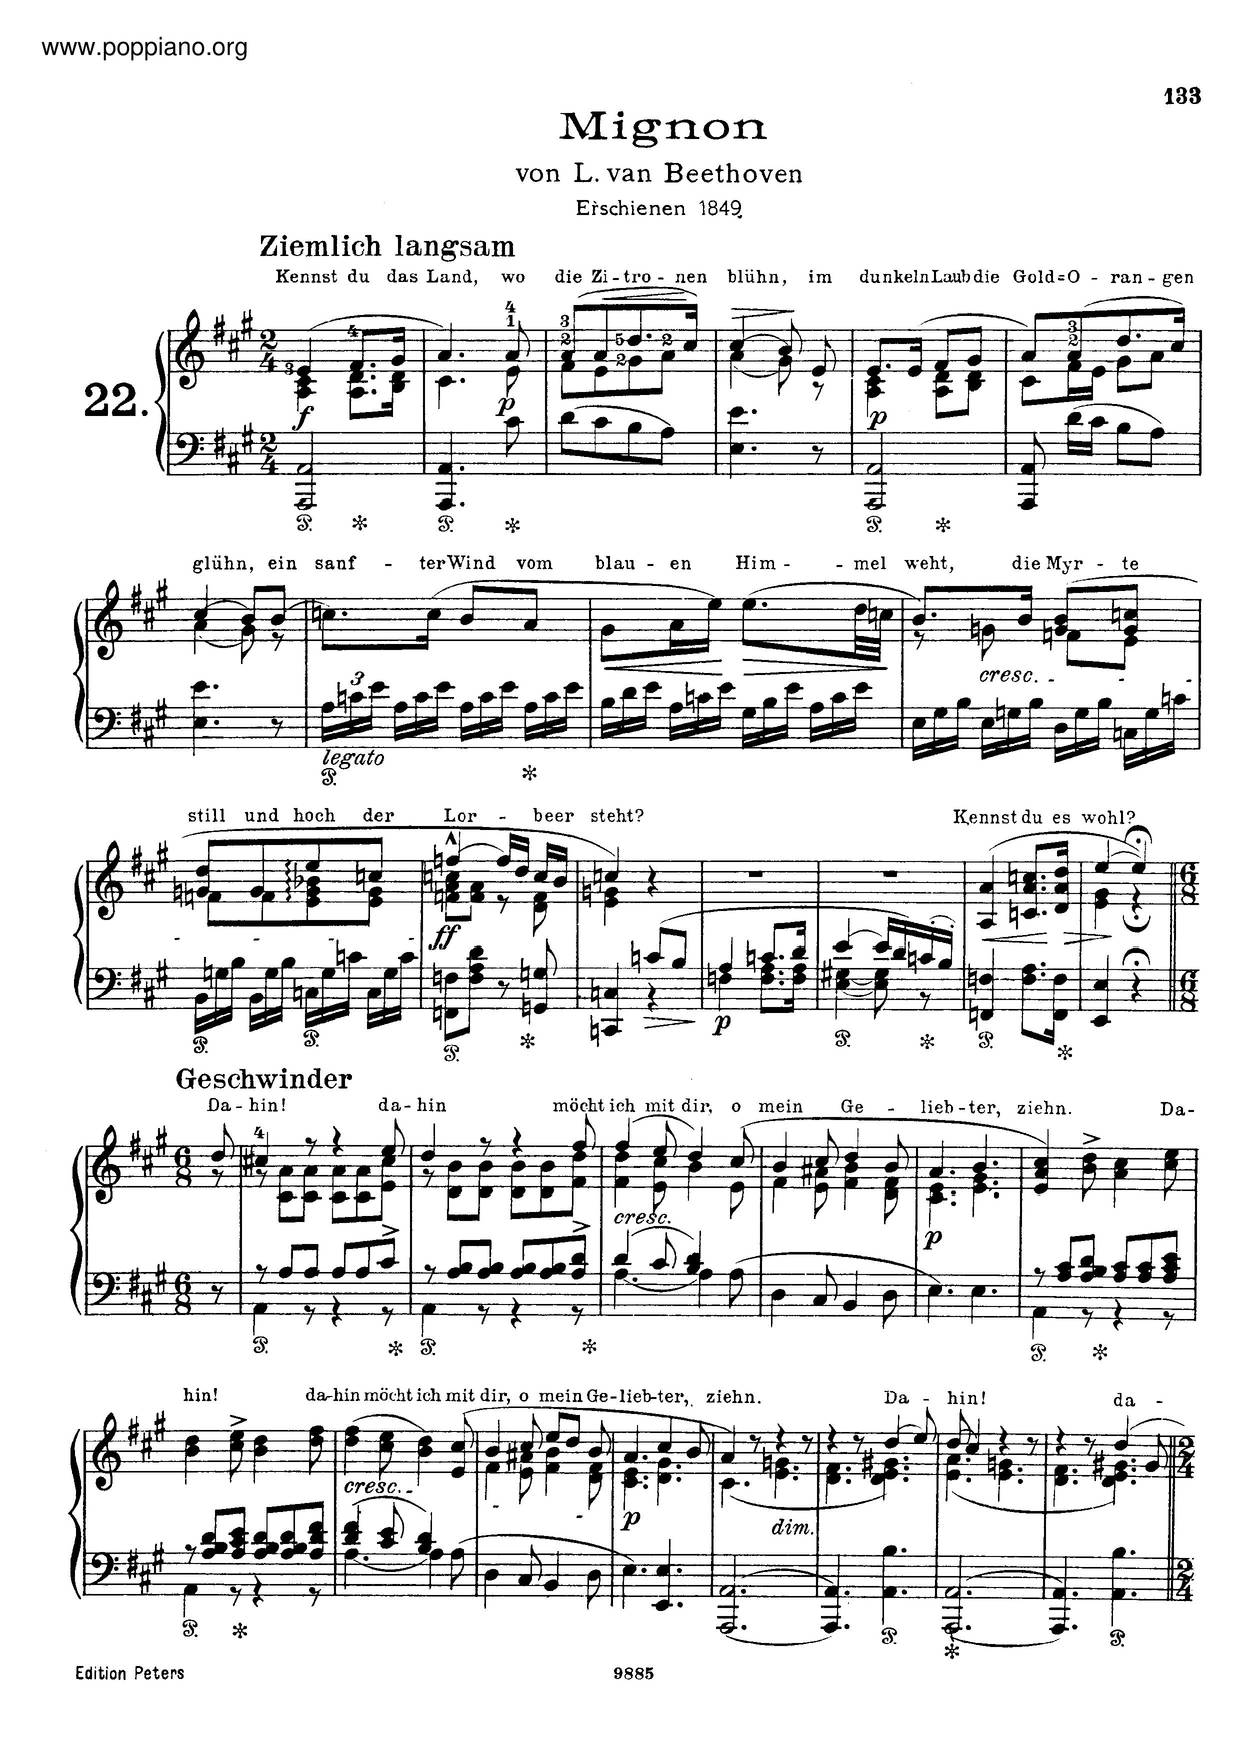 6 Lieder Von Goethe, By Beethoven, S.468琴譜